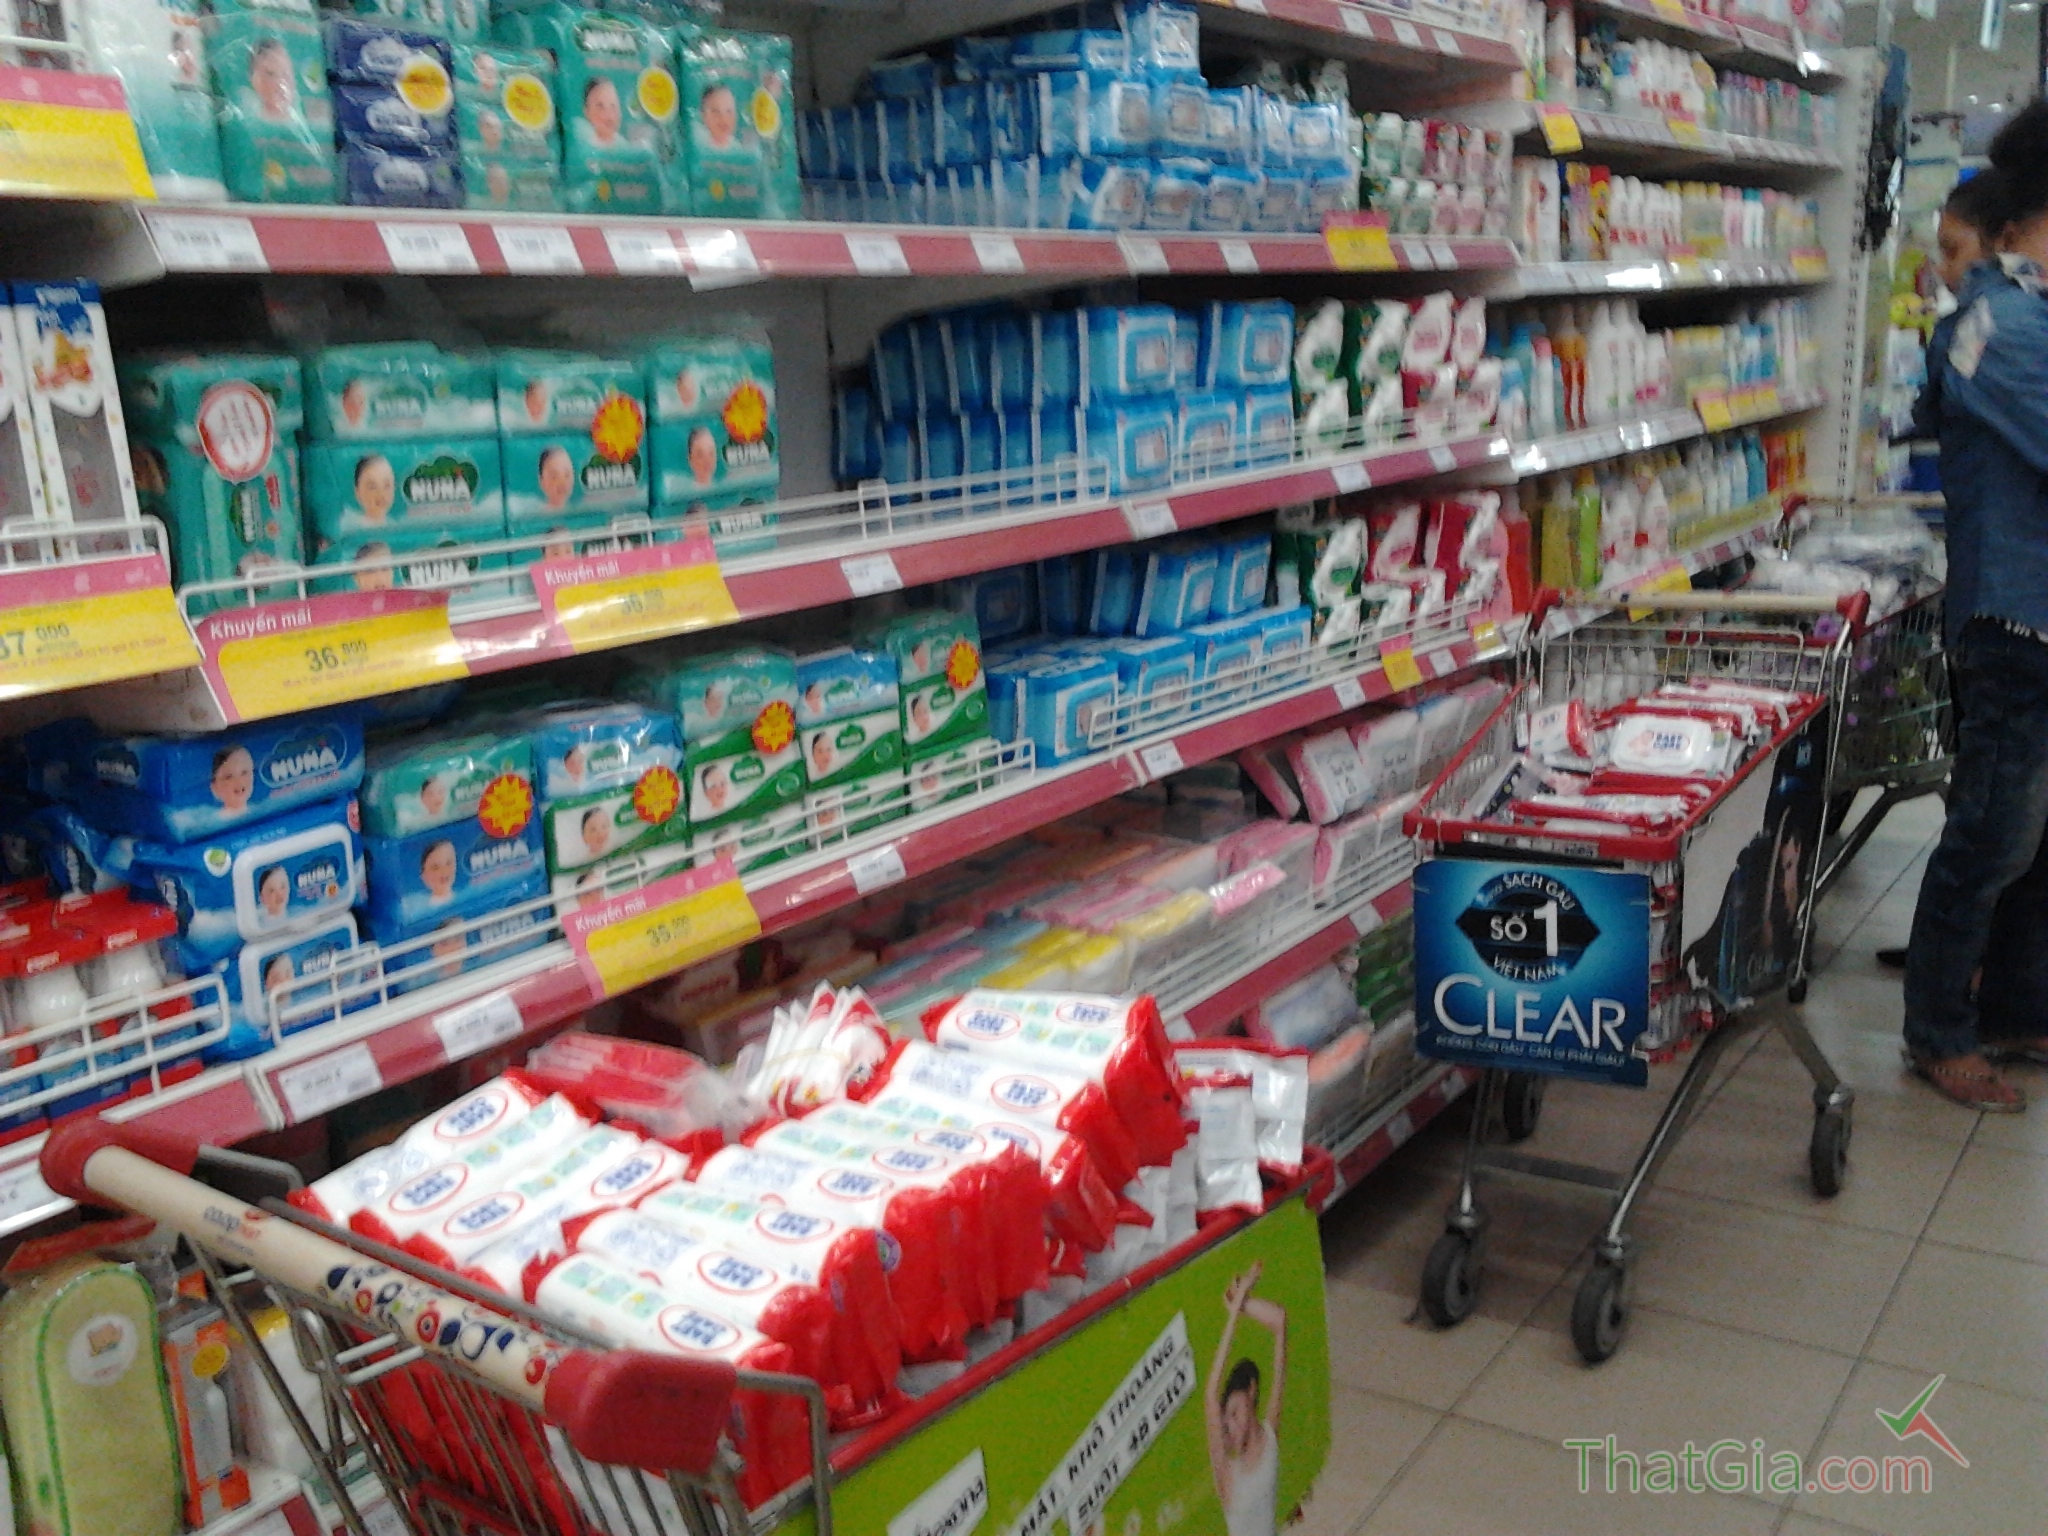 Sản phẩm khăn ướt của Công ty Việt Úc bị toàn hệ thống siêu thị Saigon Co-op mart rút khỏi quầy, tạm ngưng bán vì thông tin nhãn mác, chất lượng không đảm bảo